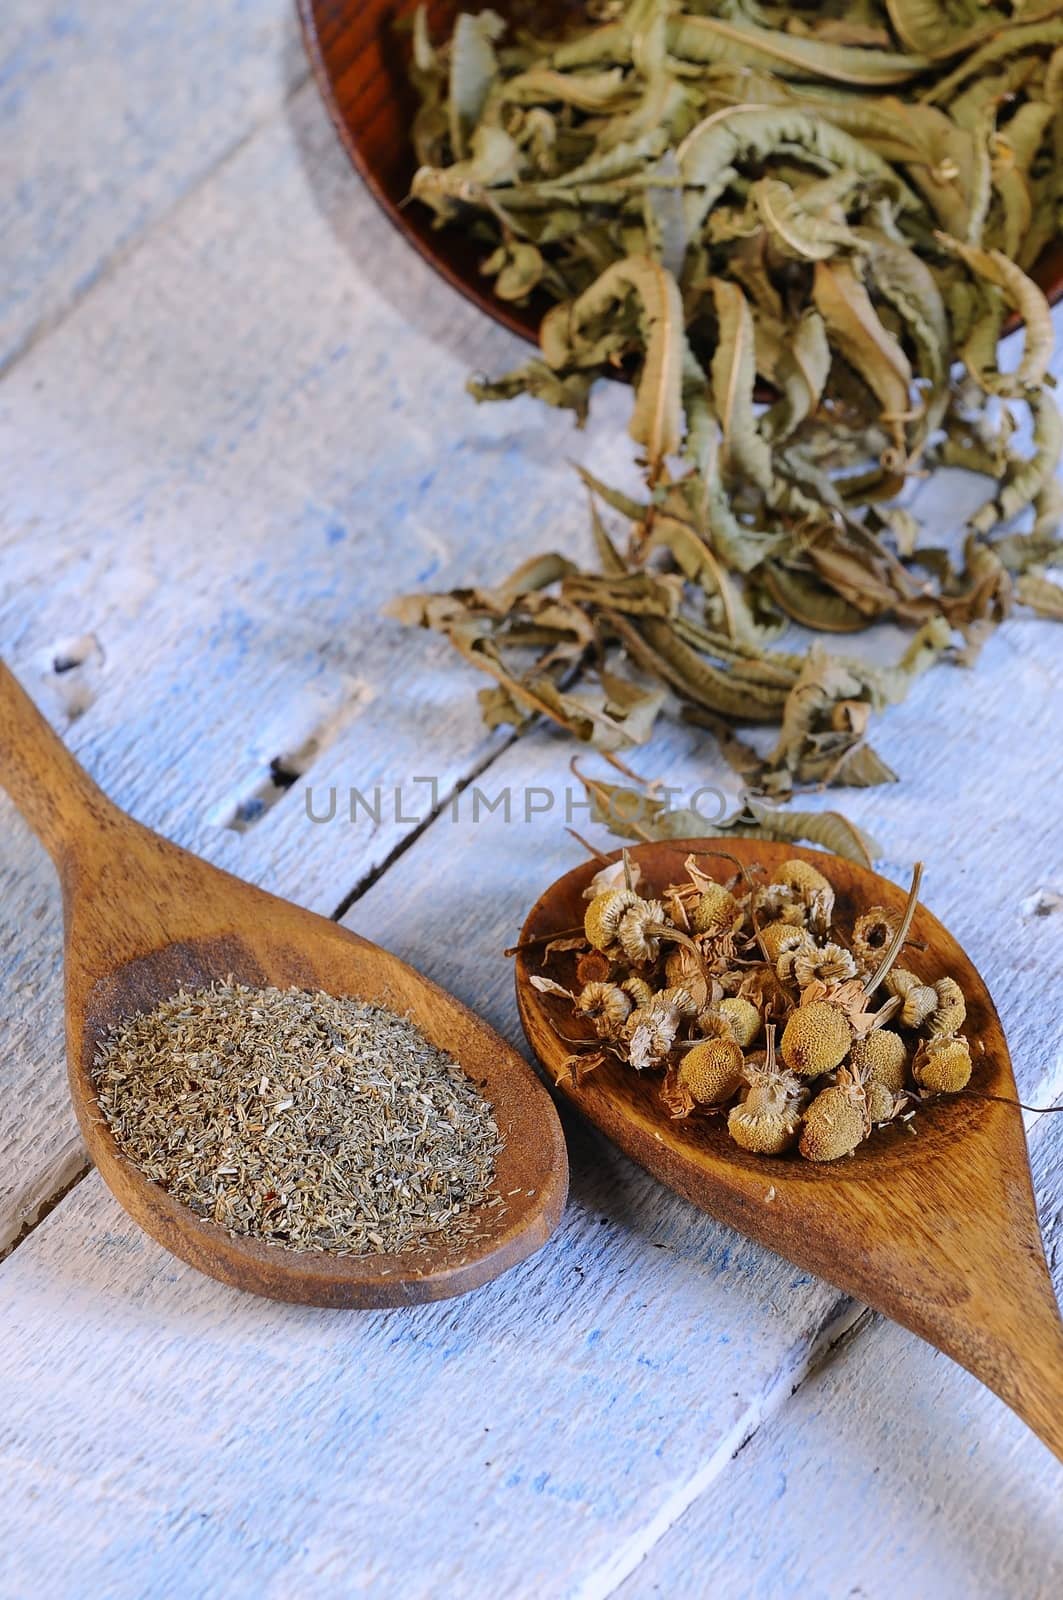 Chamomile and tea. by CreativePhotoSpain